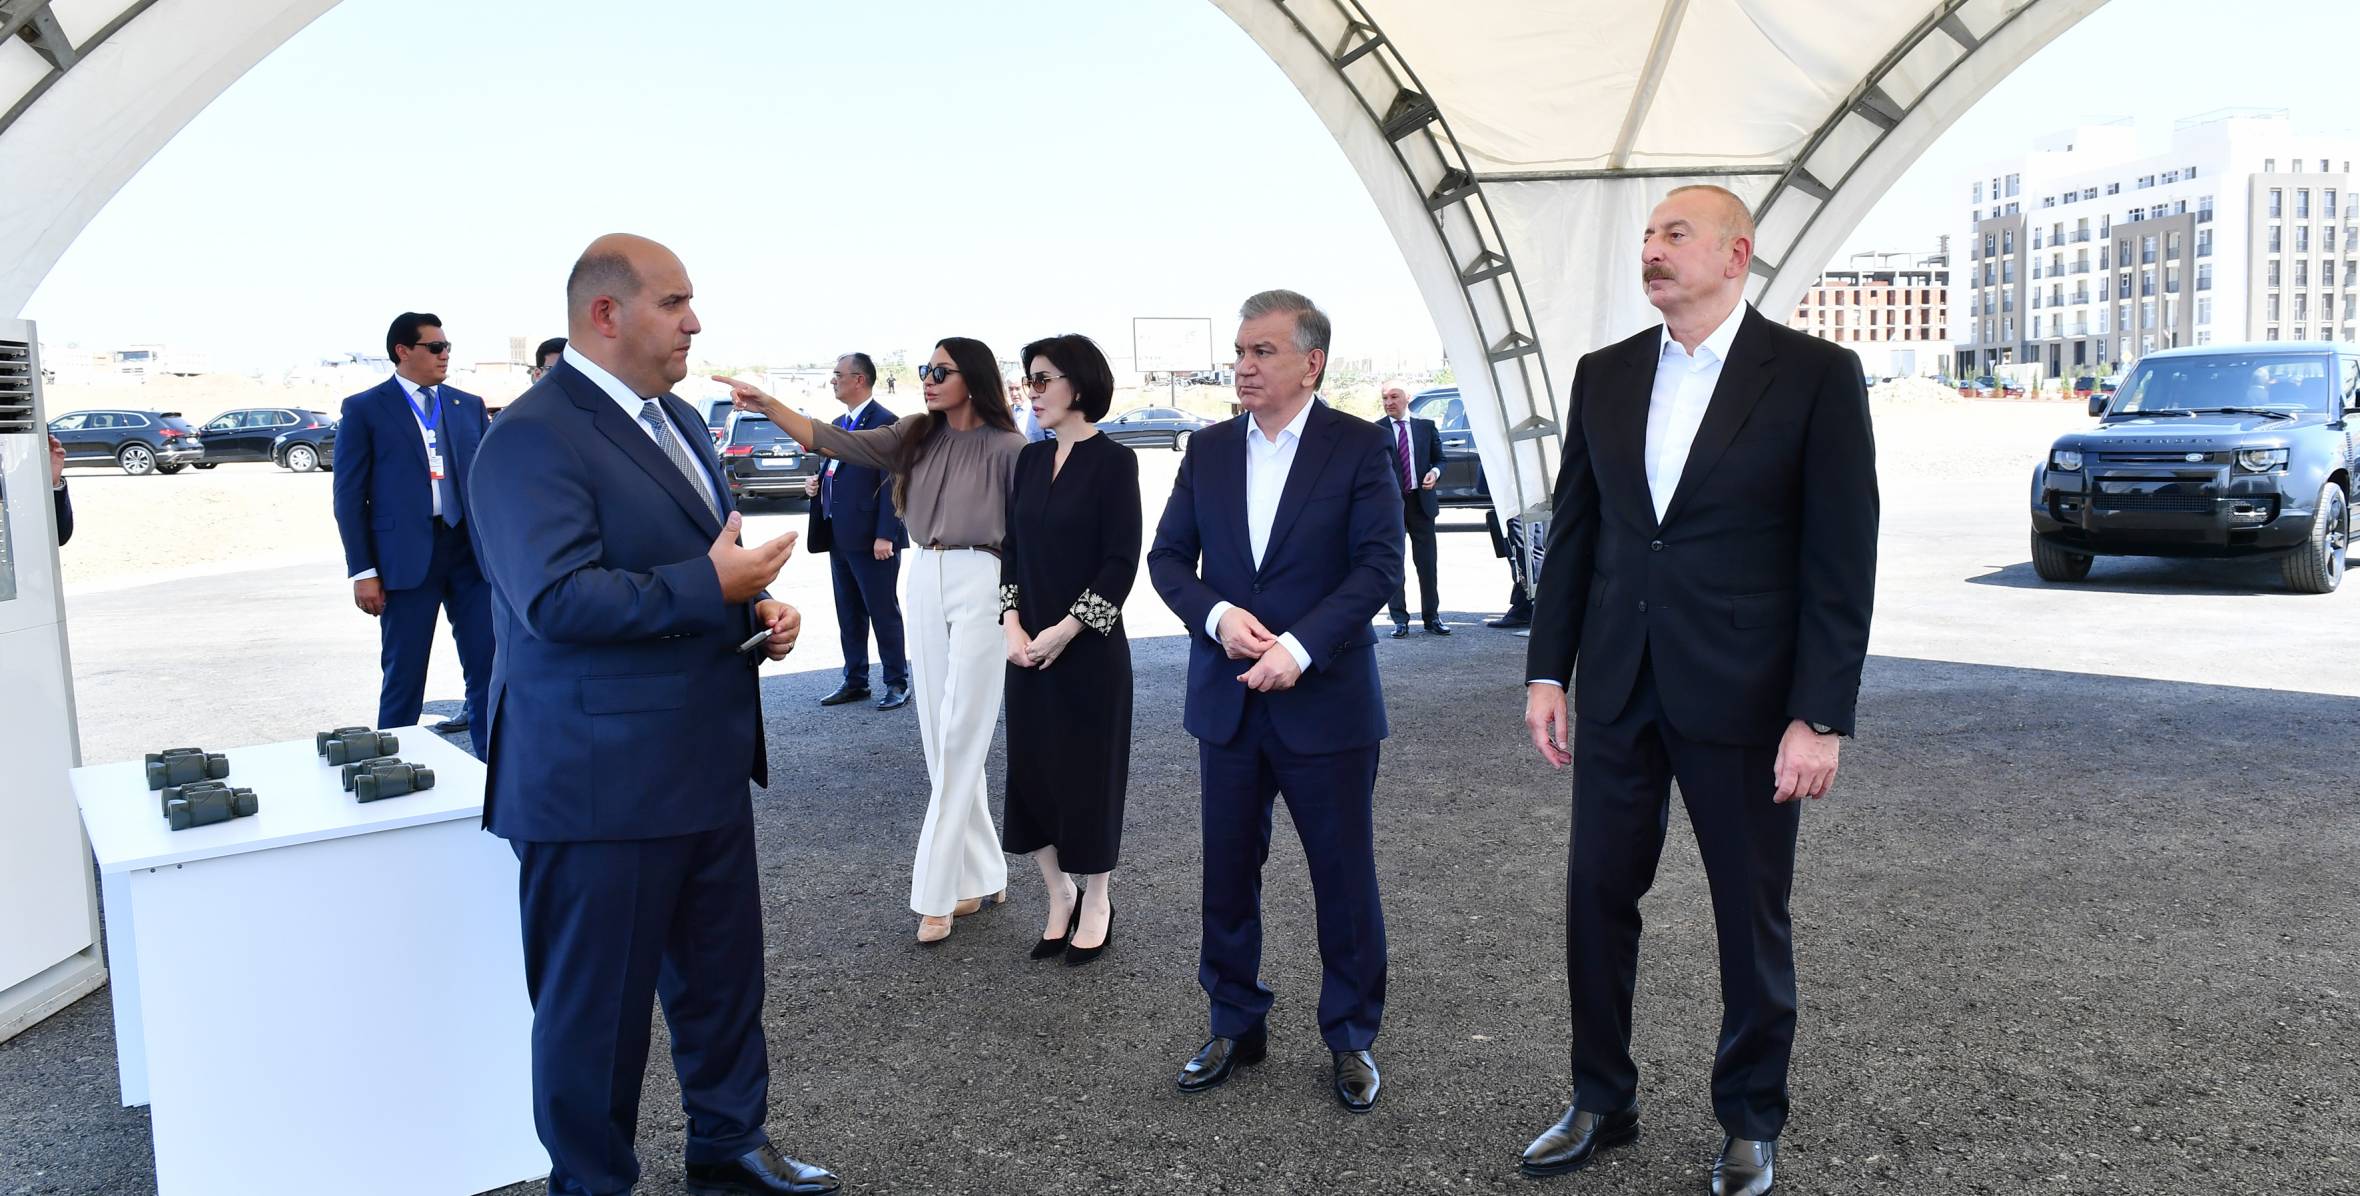 Президент Республики Узбекистан Шавкат Мирзиёев и его супруга Зироатхон Мирзиёева ознакомились с Генеральным планом города Физули